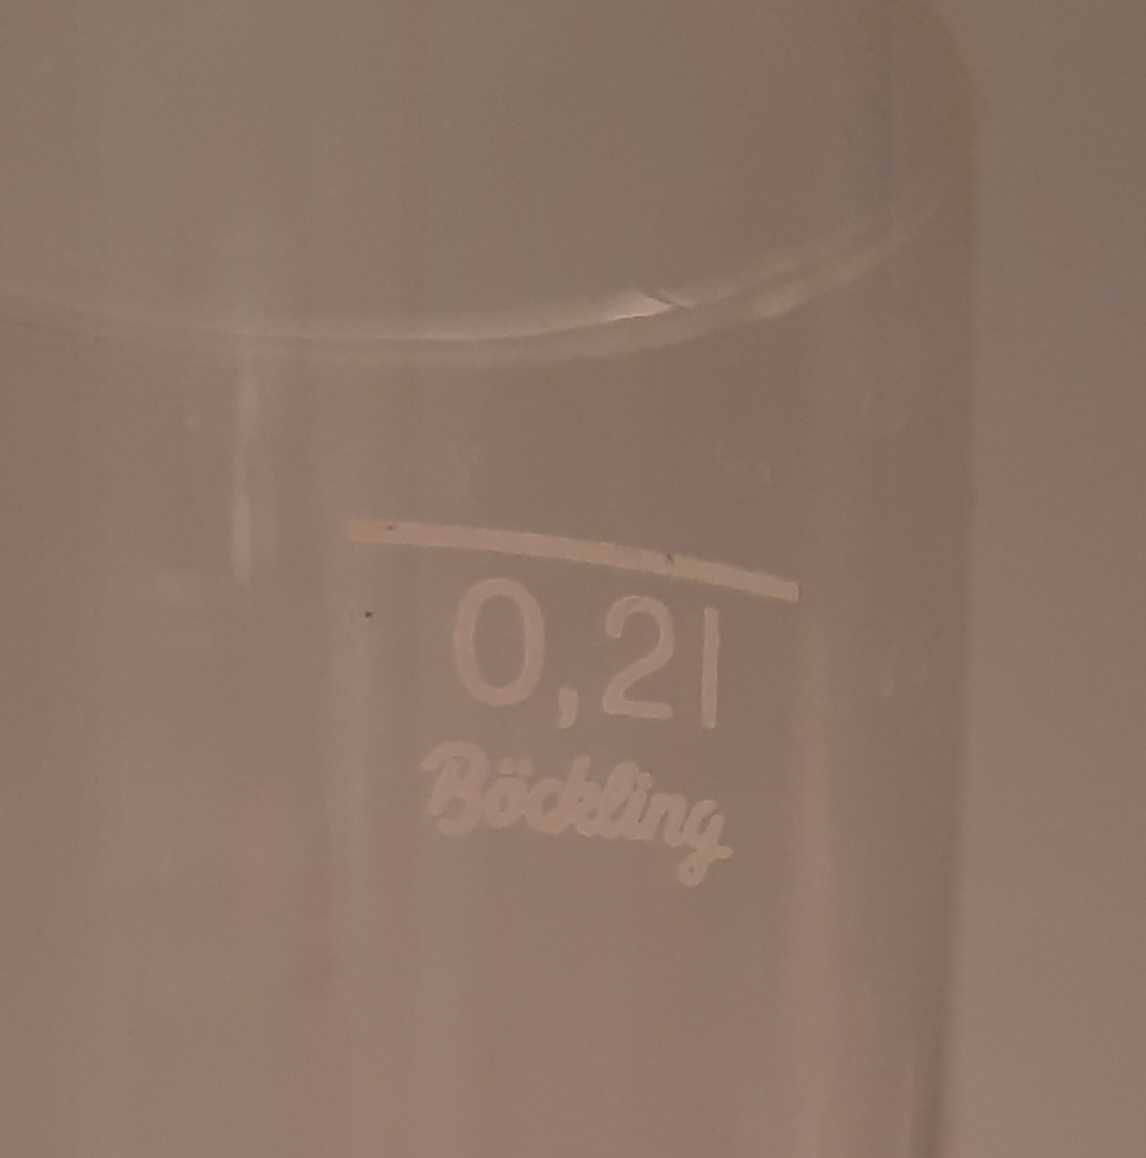 4 szklaneczki z wizerunkiem Beethovena - 0,2 litra